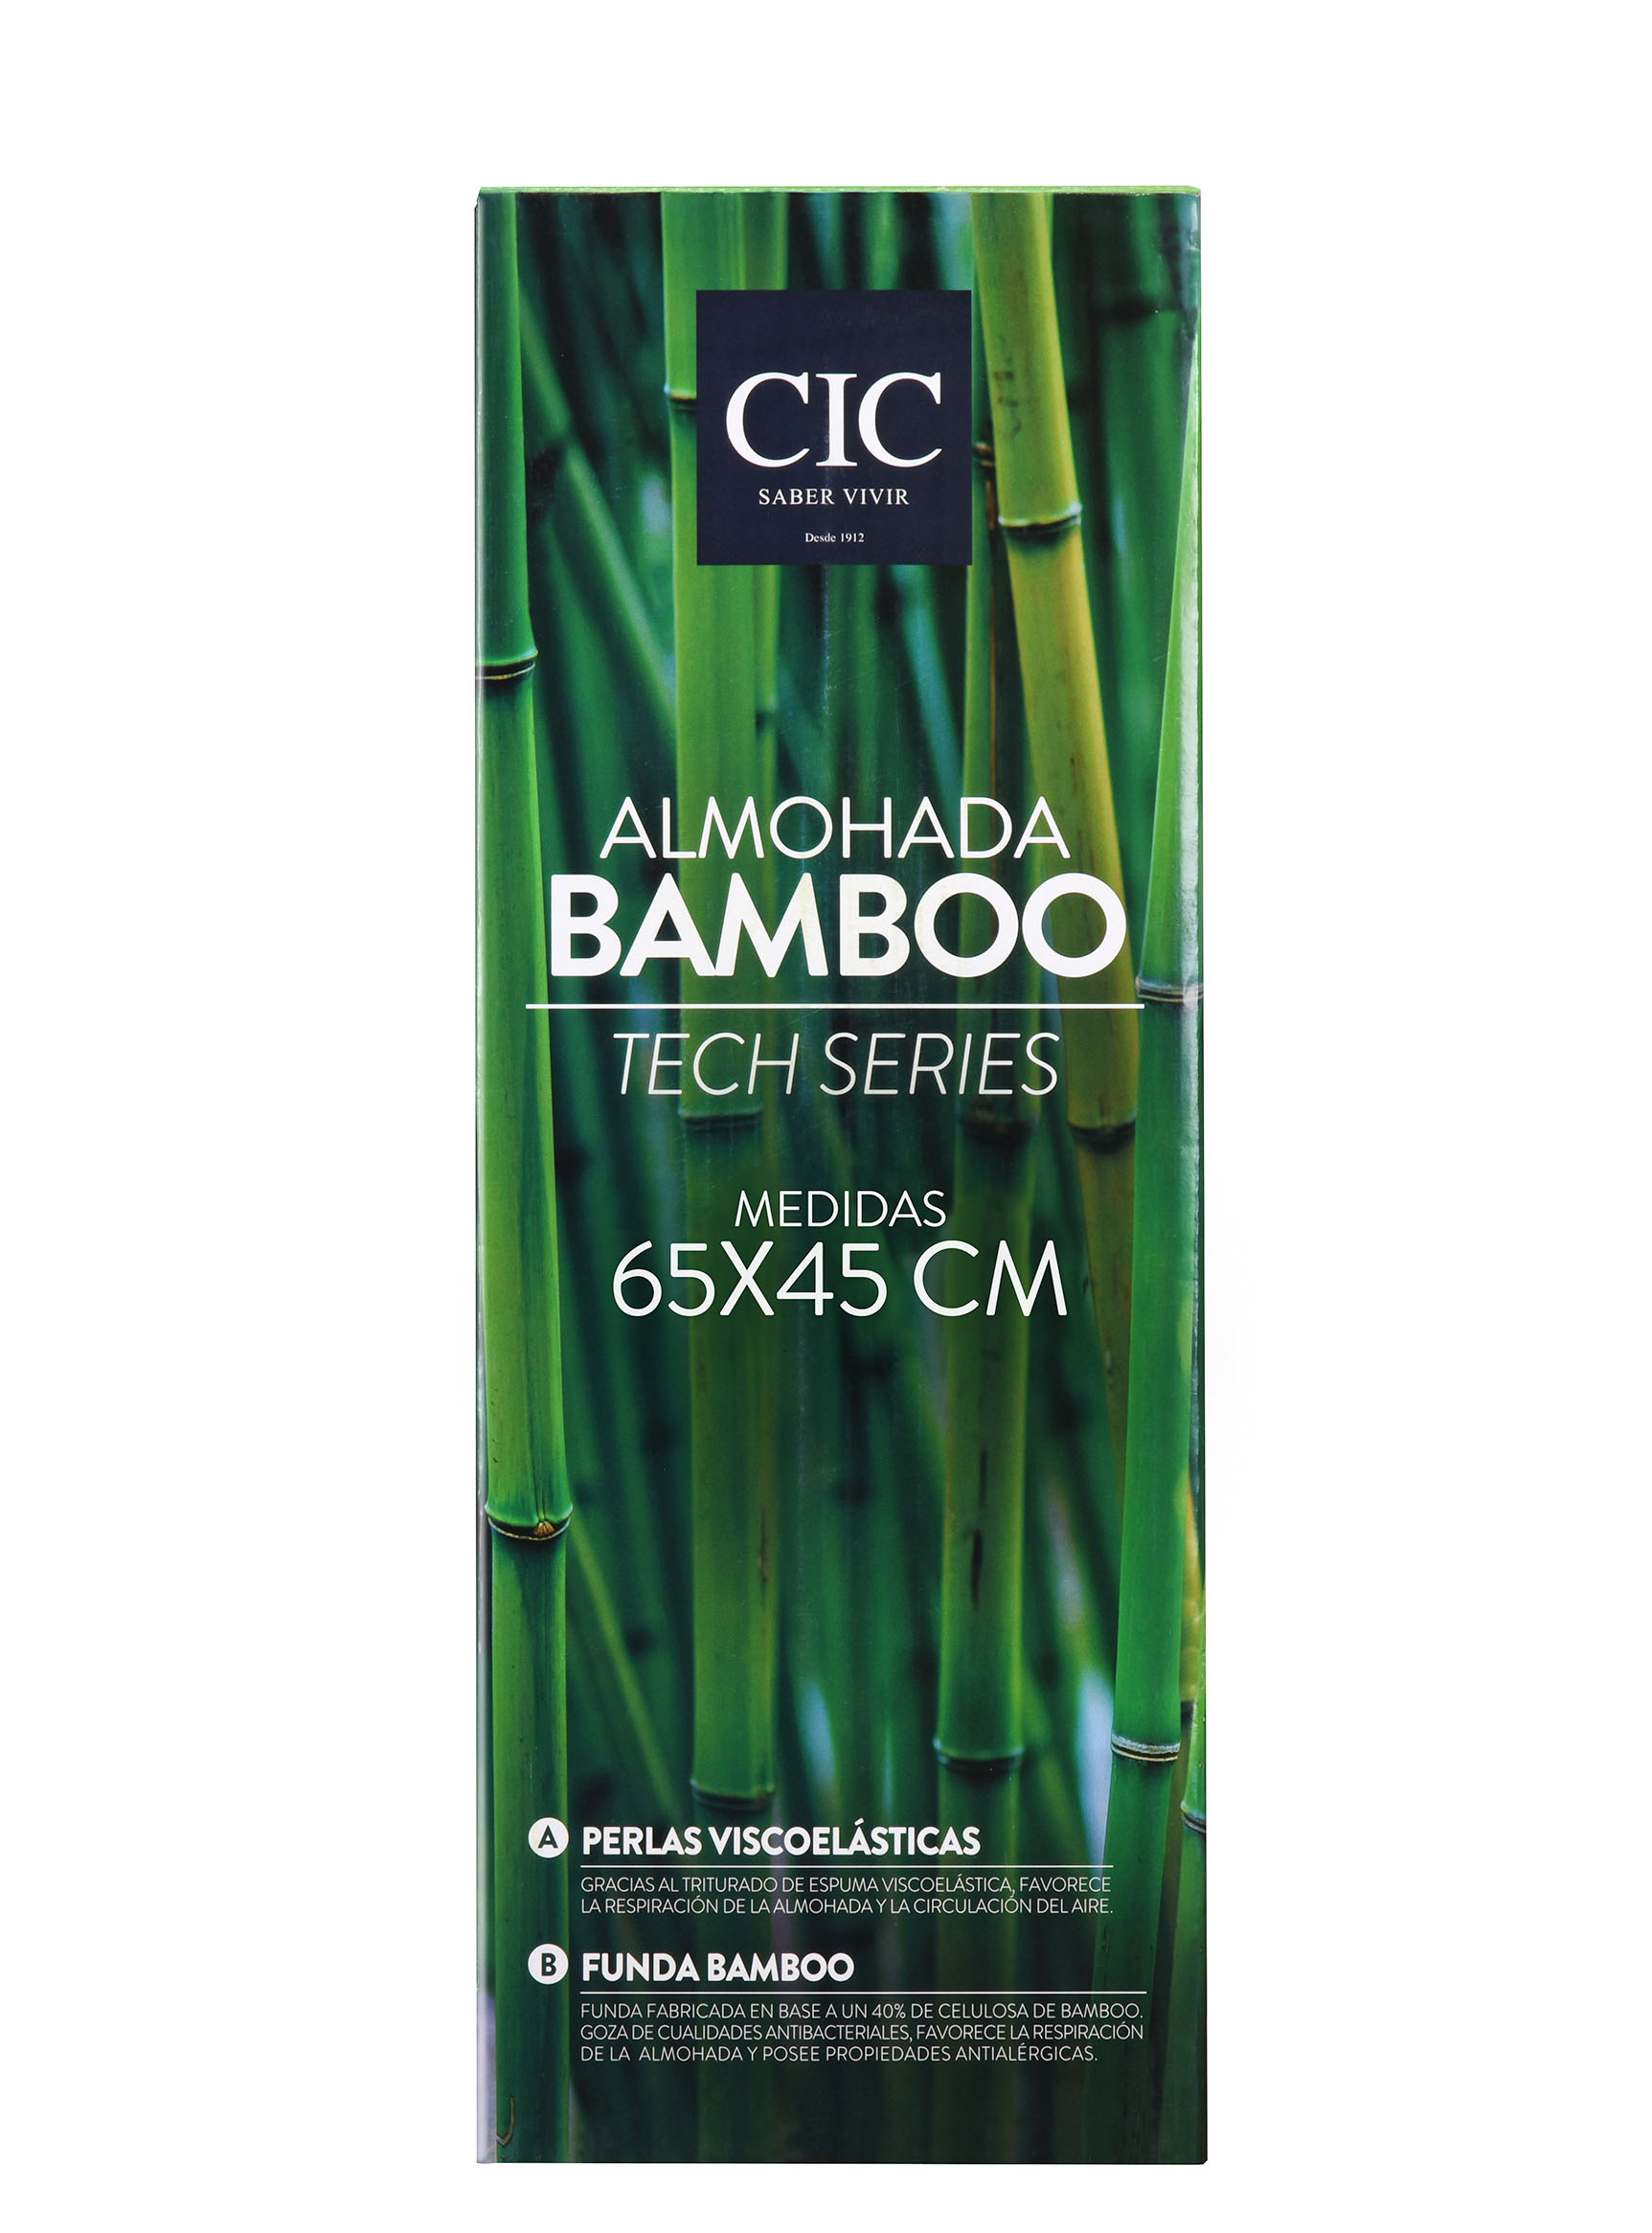 Almohada Viscoelastica para Parejas con Funda de Bamboo